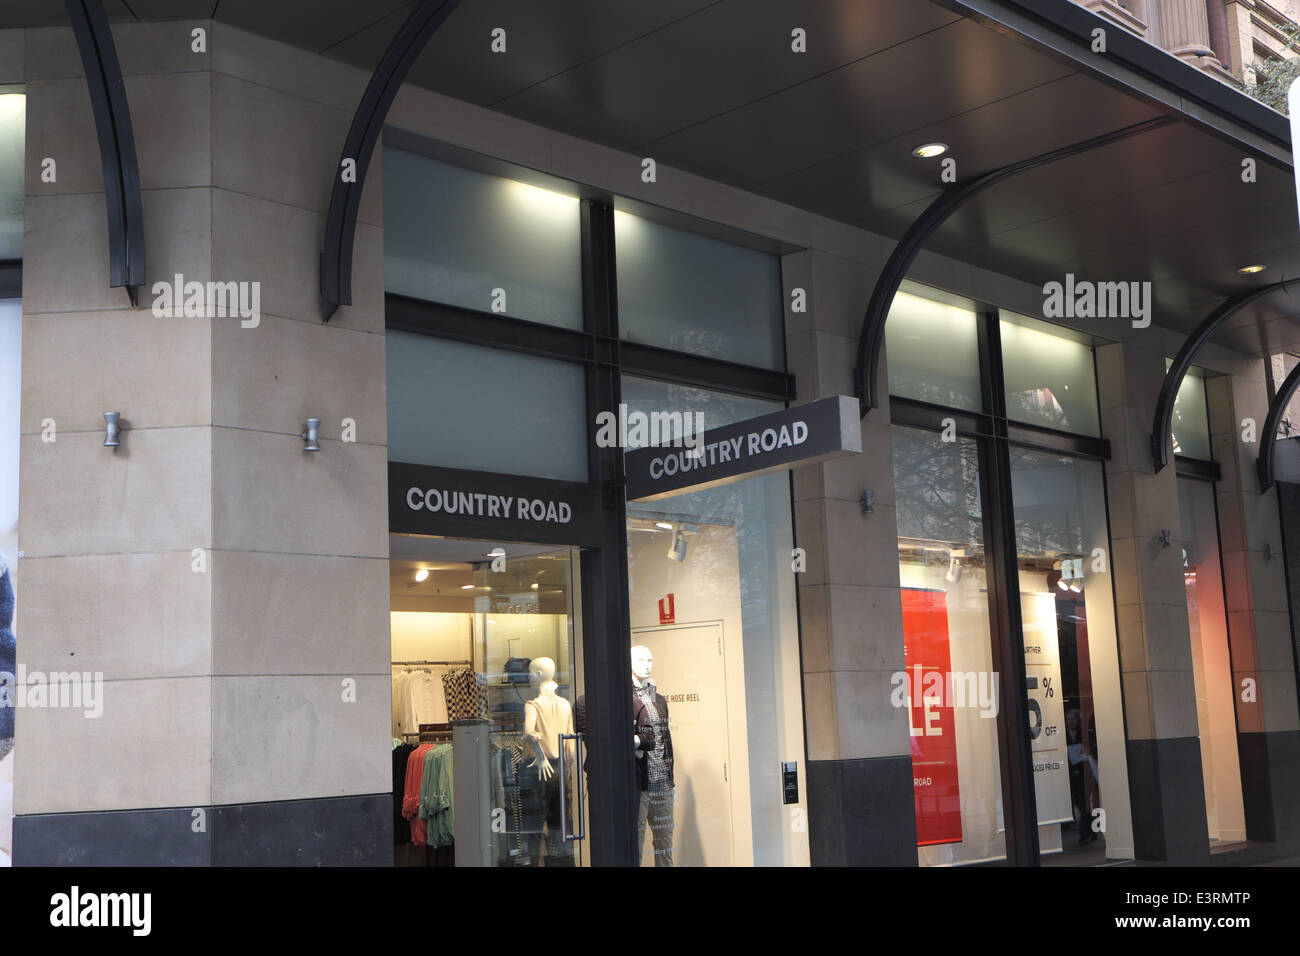 Route de campagne, magasin de vêtements à Sydney's Pitt Street, Sydney, Australie Banque D'Images